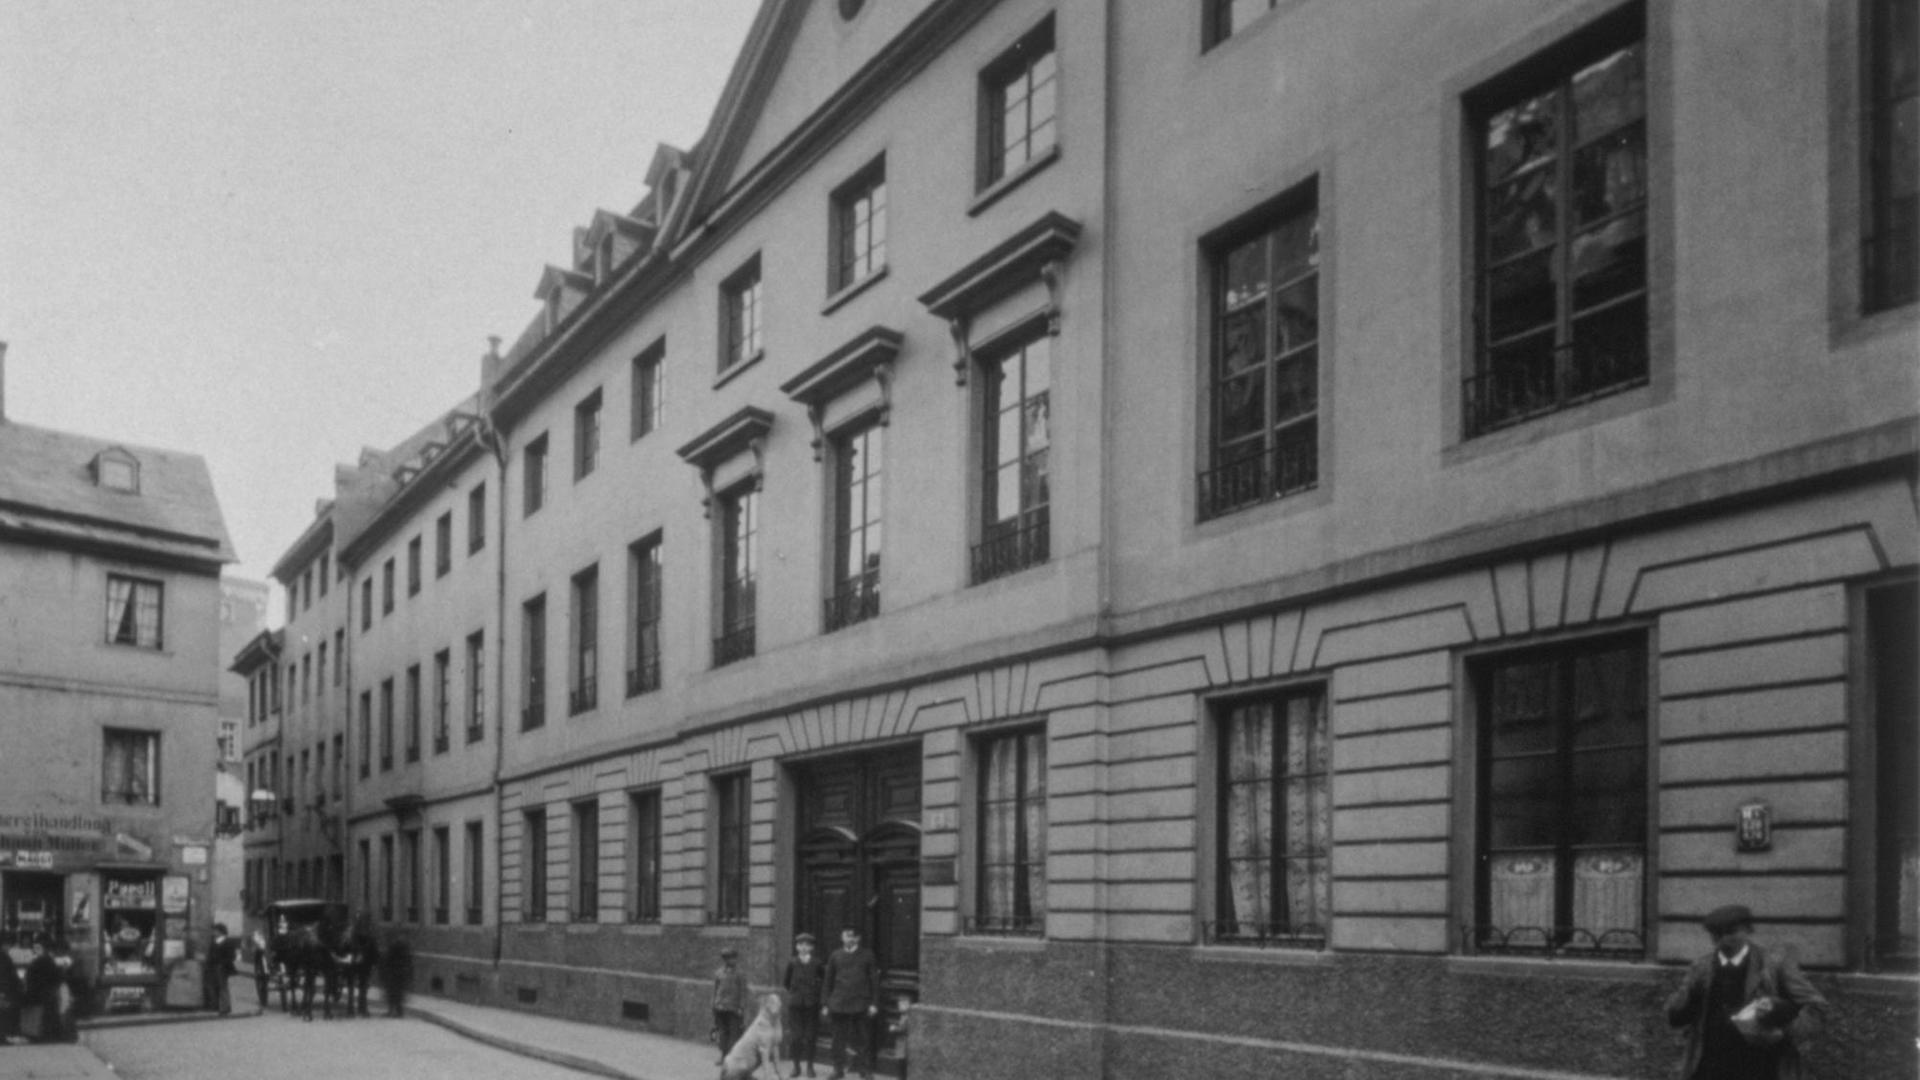 Auf dem s/w Bild ist eine belebte Straßenszene des Jahres 1919 zu sehen: Eine lange Häuserfront mit vielen Fenstern, im Erdgeschoss Stuck an der Fassade. Im Hintergrund Menschen und eine Kutsche.